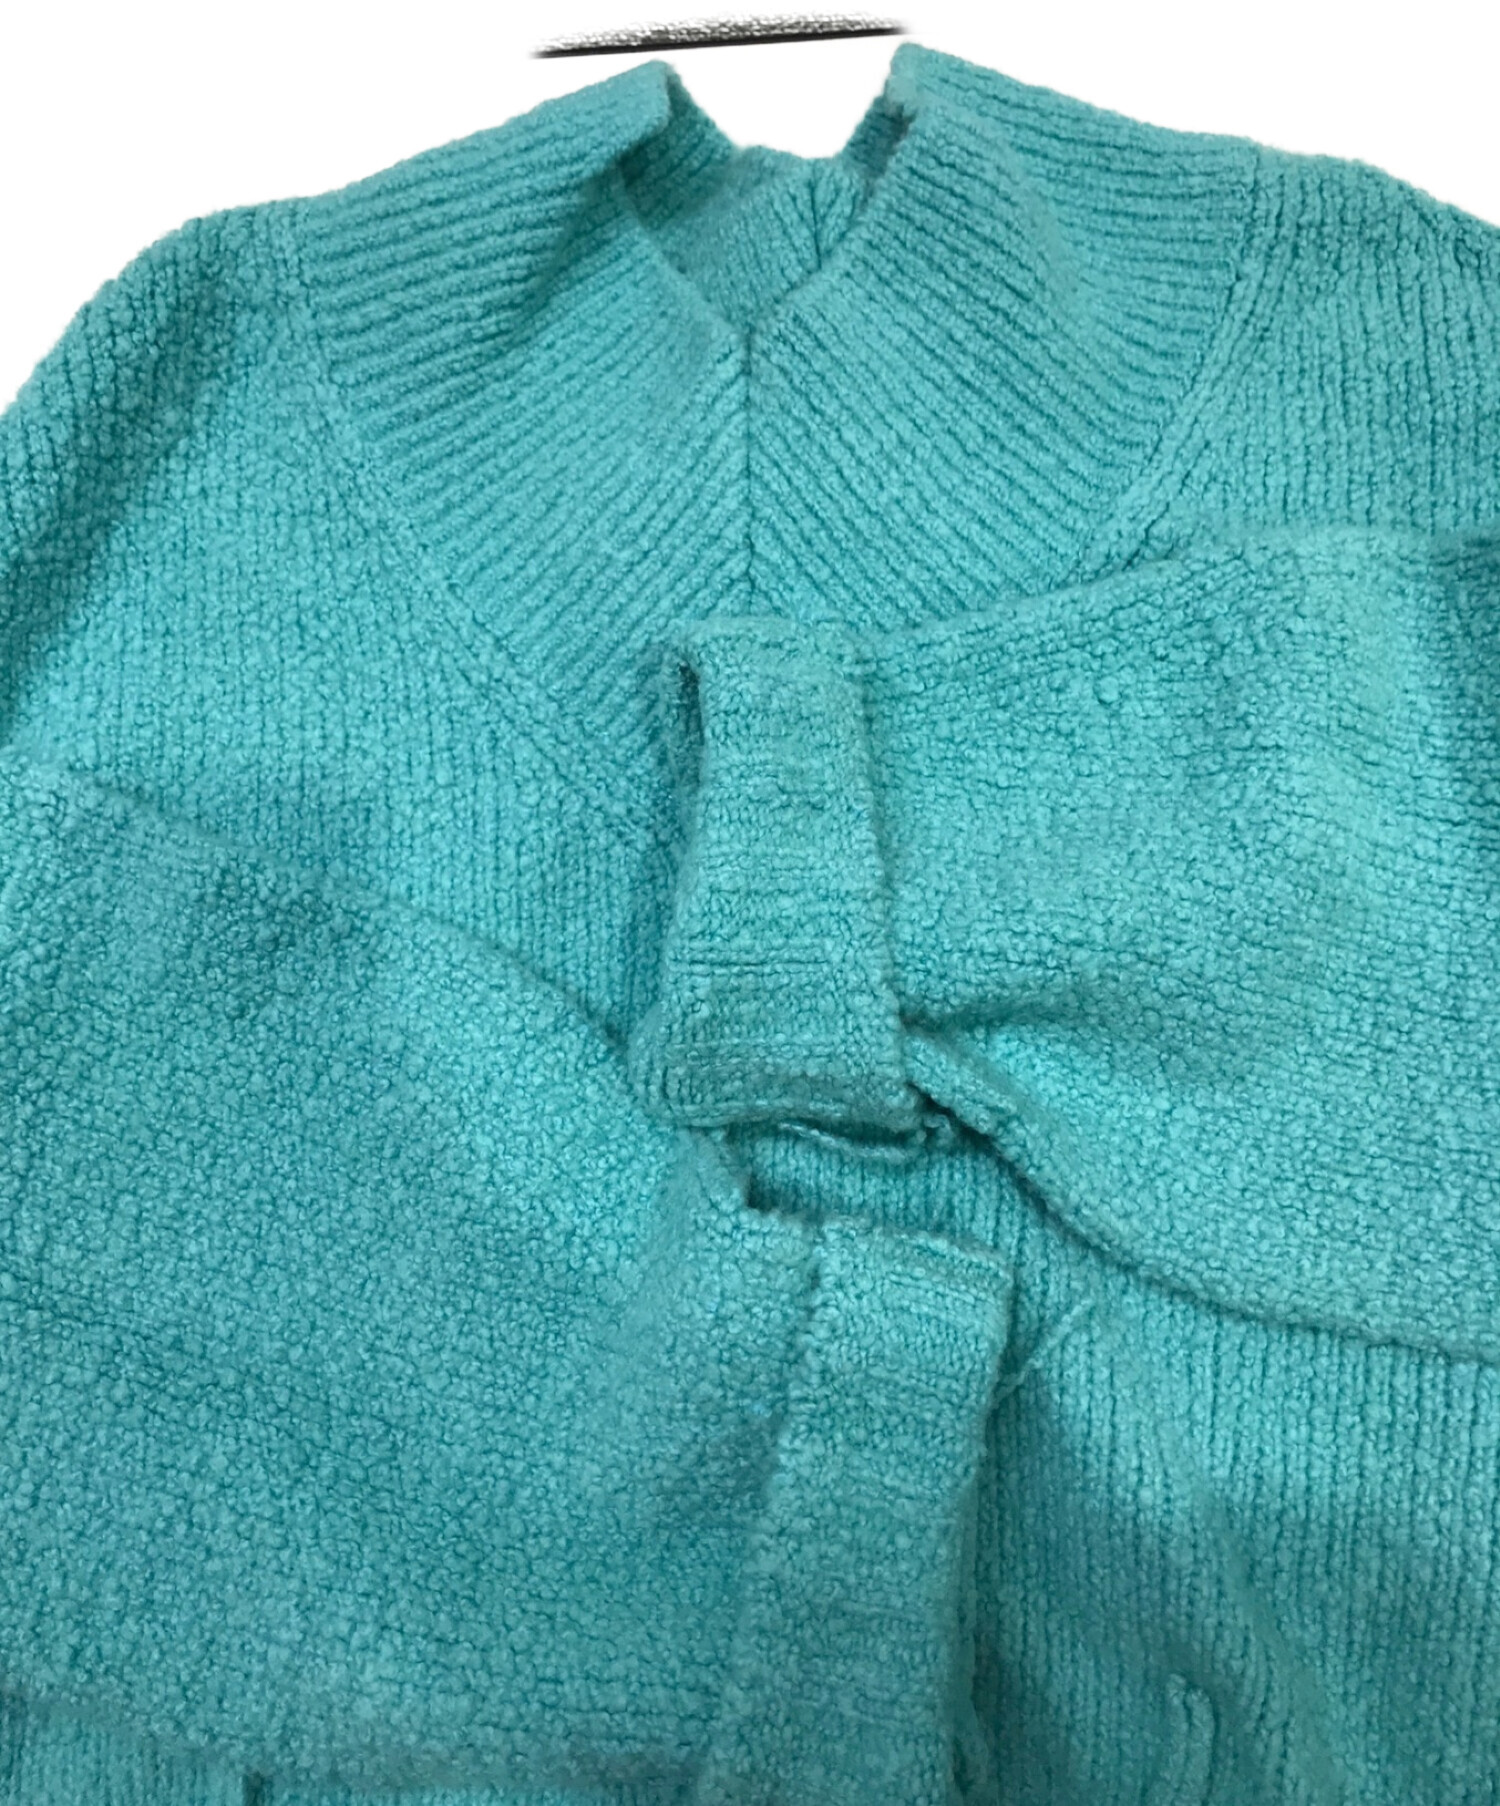 IRENE (アイレネ) Whole Garment Knit Tops スカイブルー サイズ:36